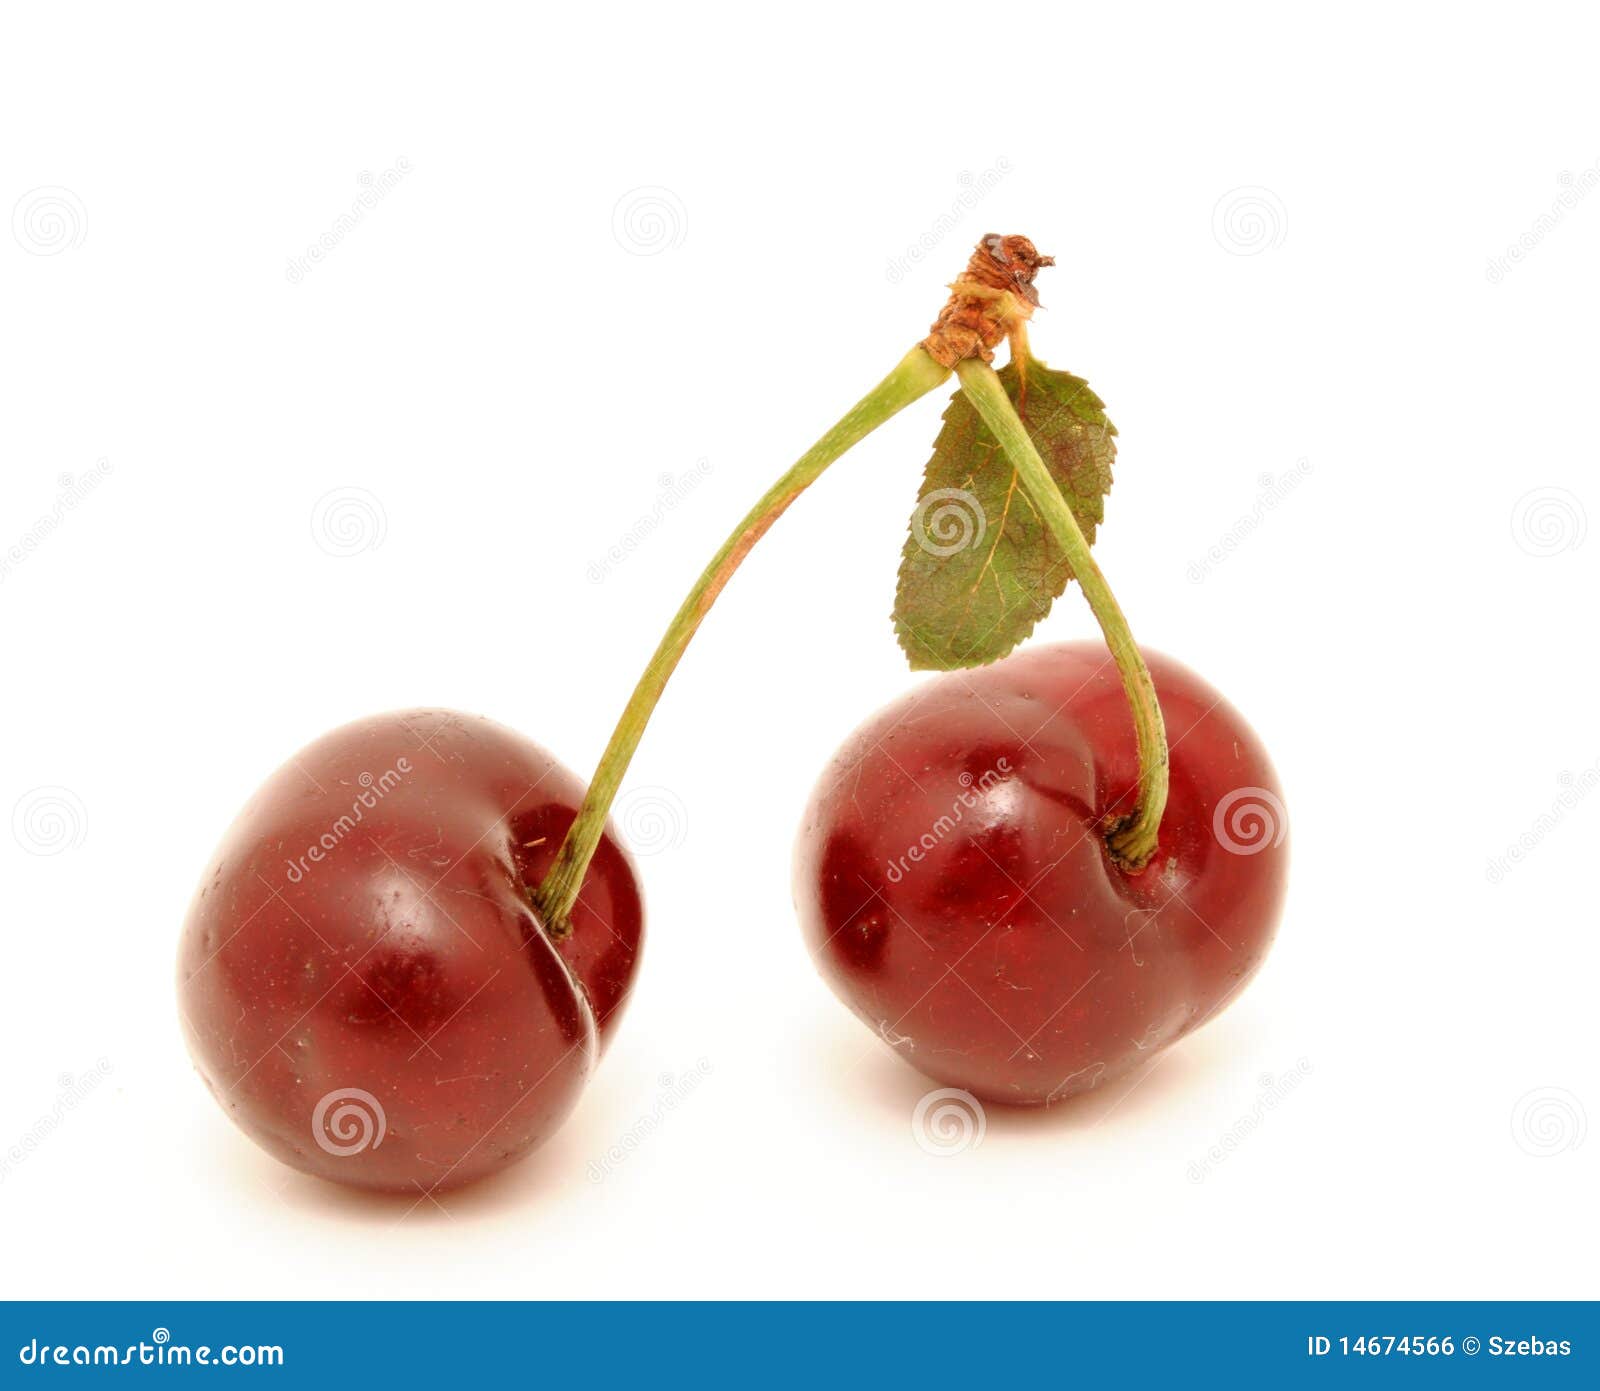 Cherries stock photo. Image of pair, healthy, cherry - 14674566